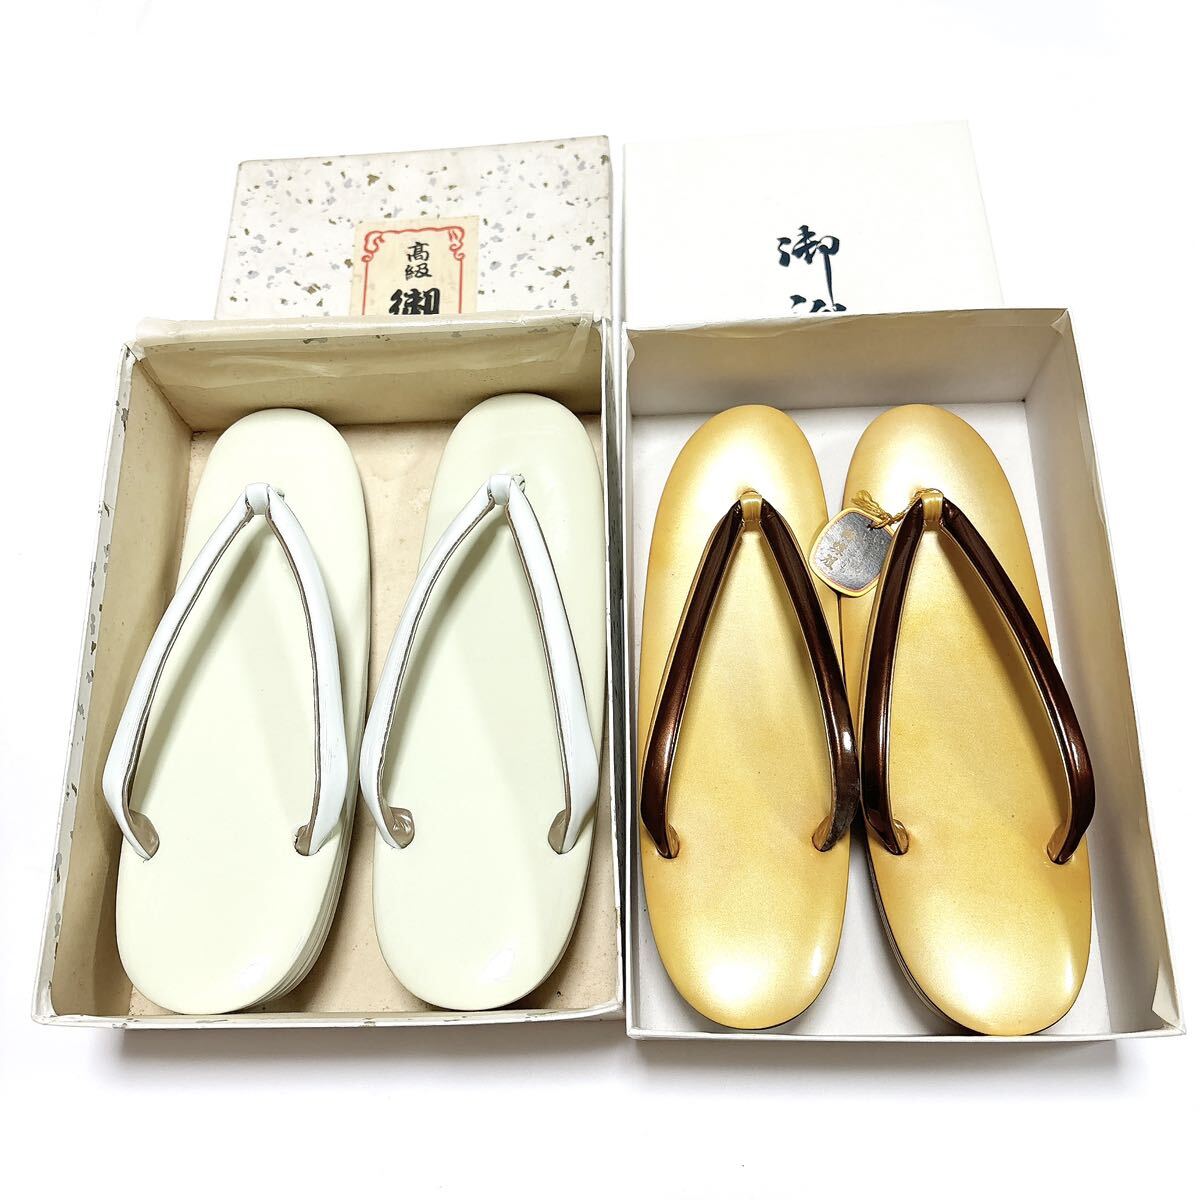  Tokyo . бабочка gold wasi zori японский костюм японская одежда в коробке не использовался 2 пар комплект alp цвет 